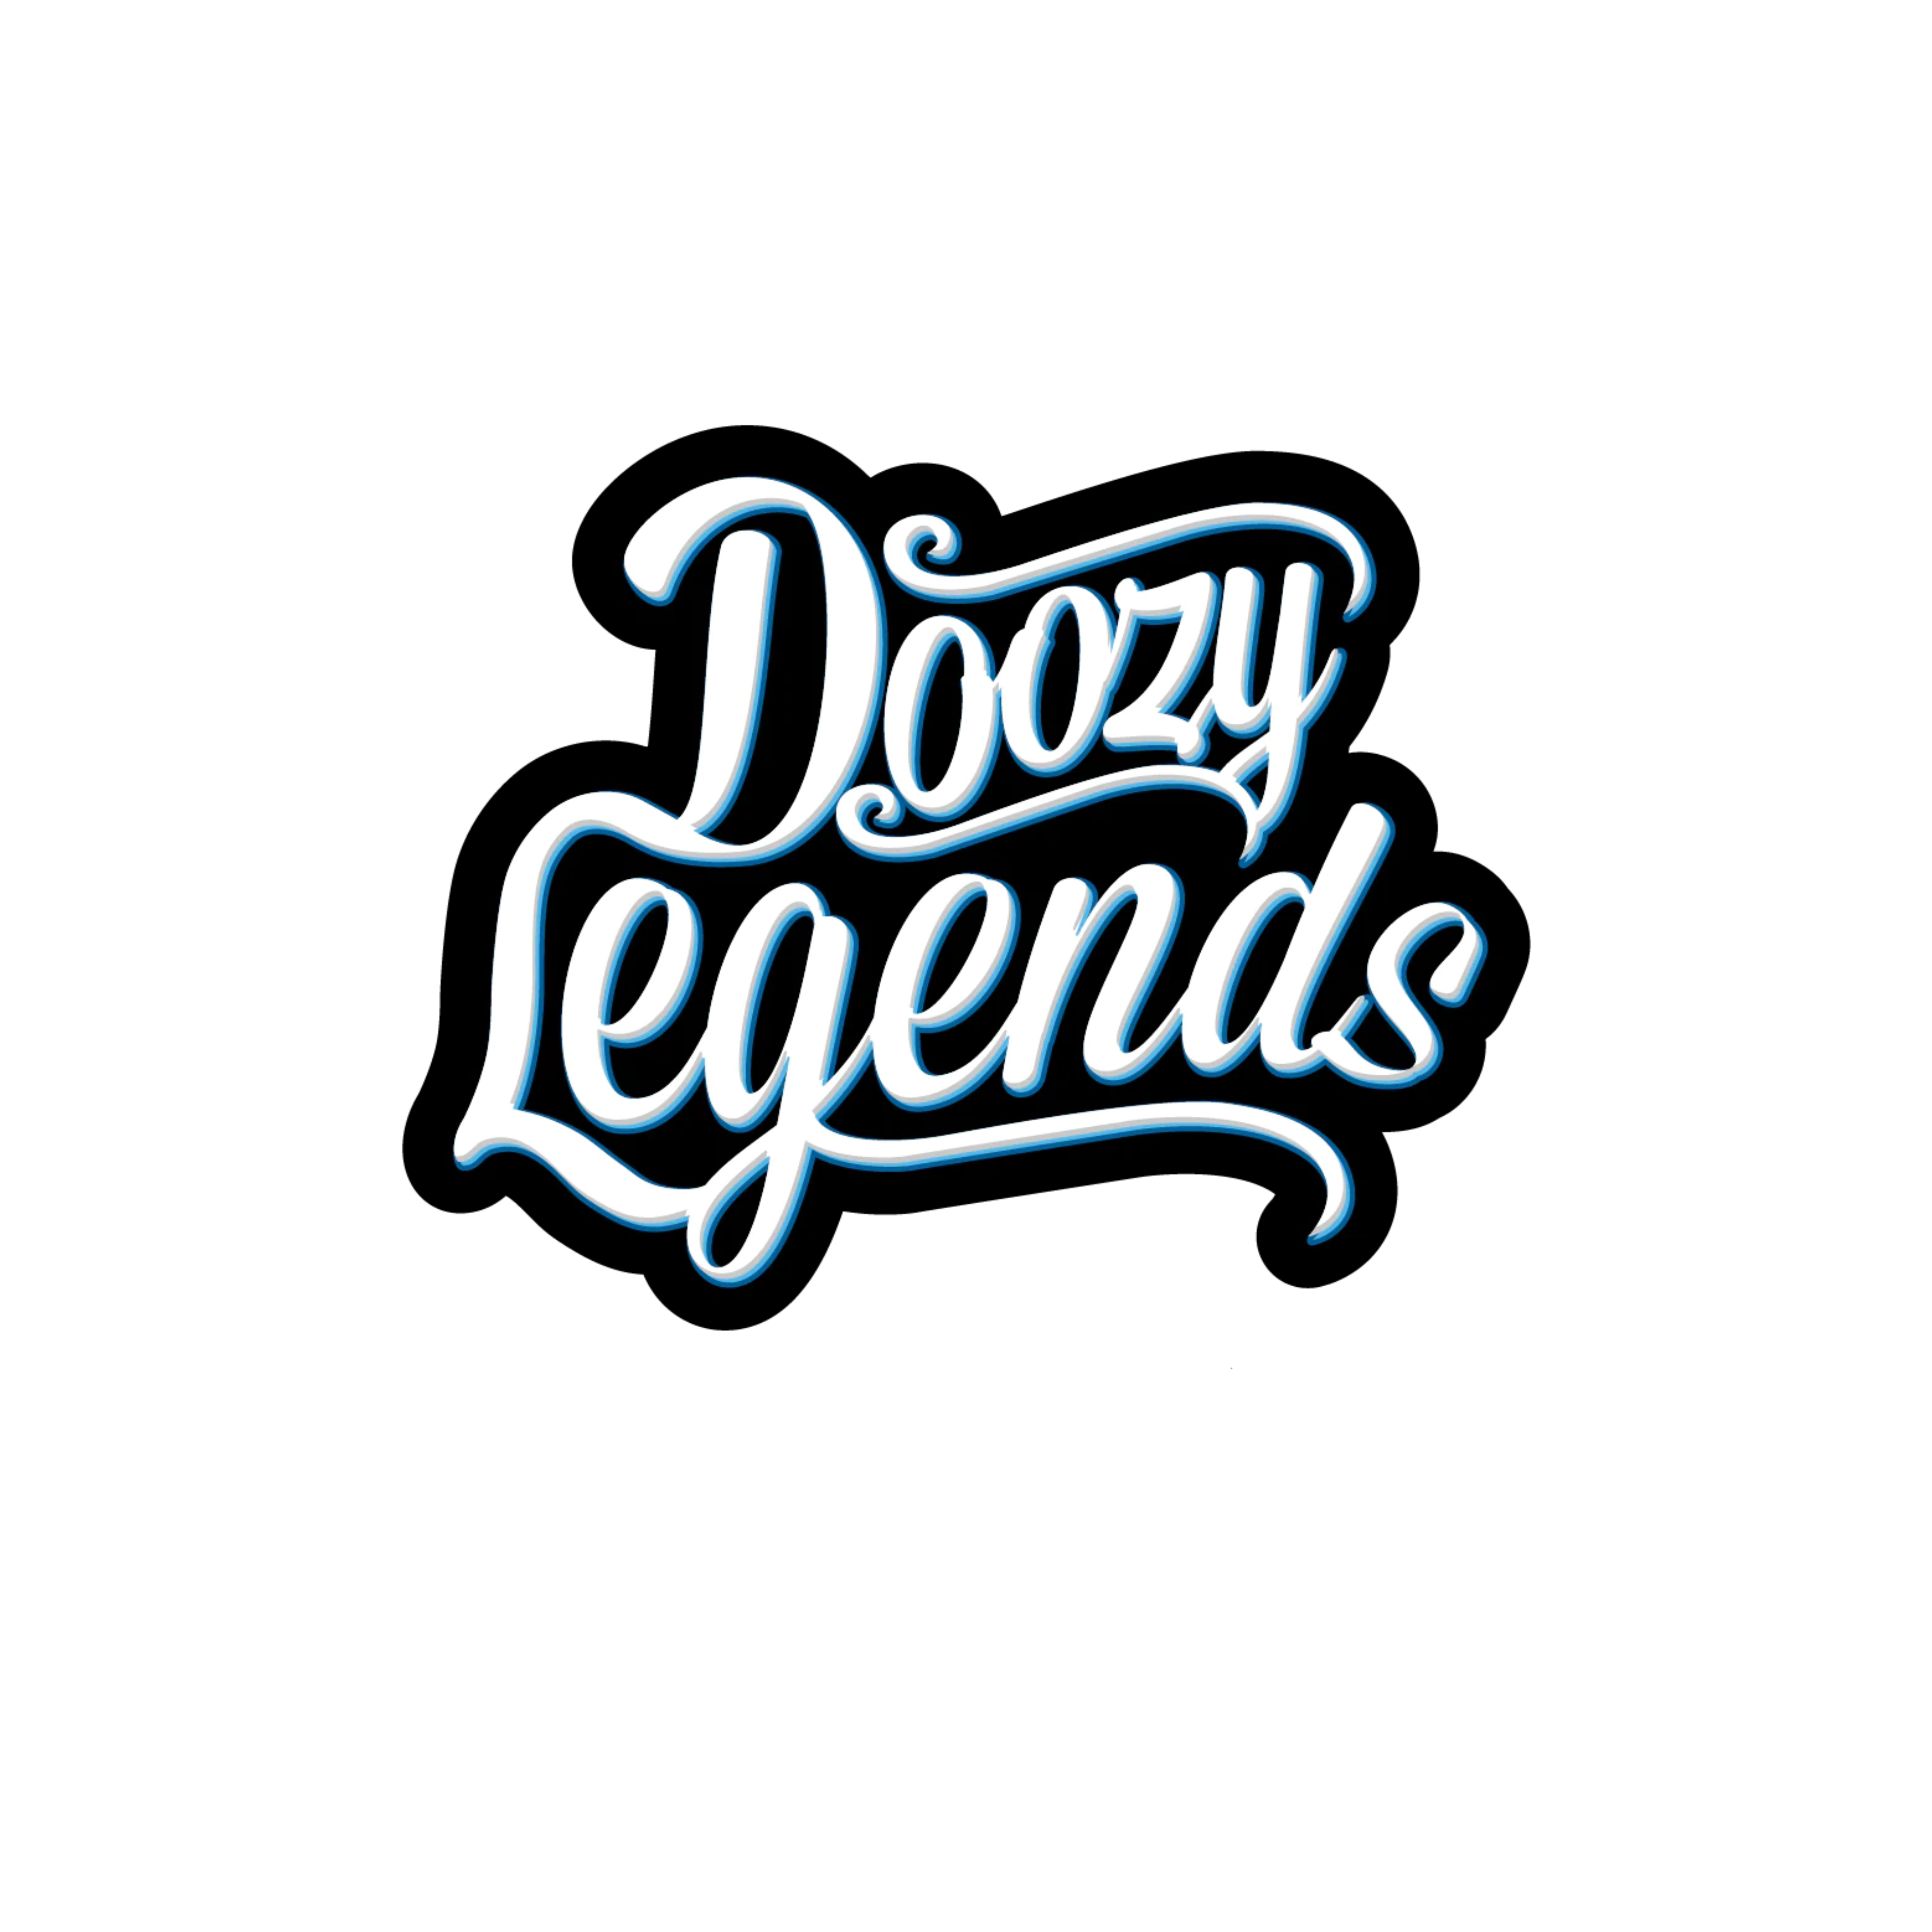 Doozy legends logo